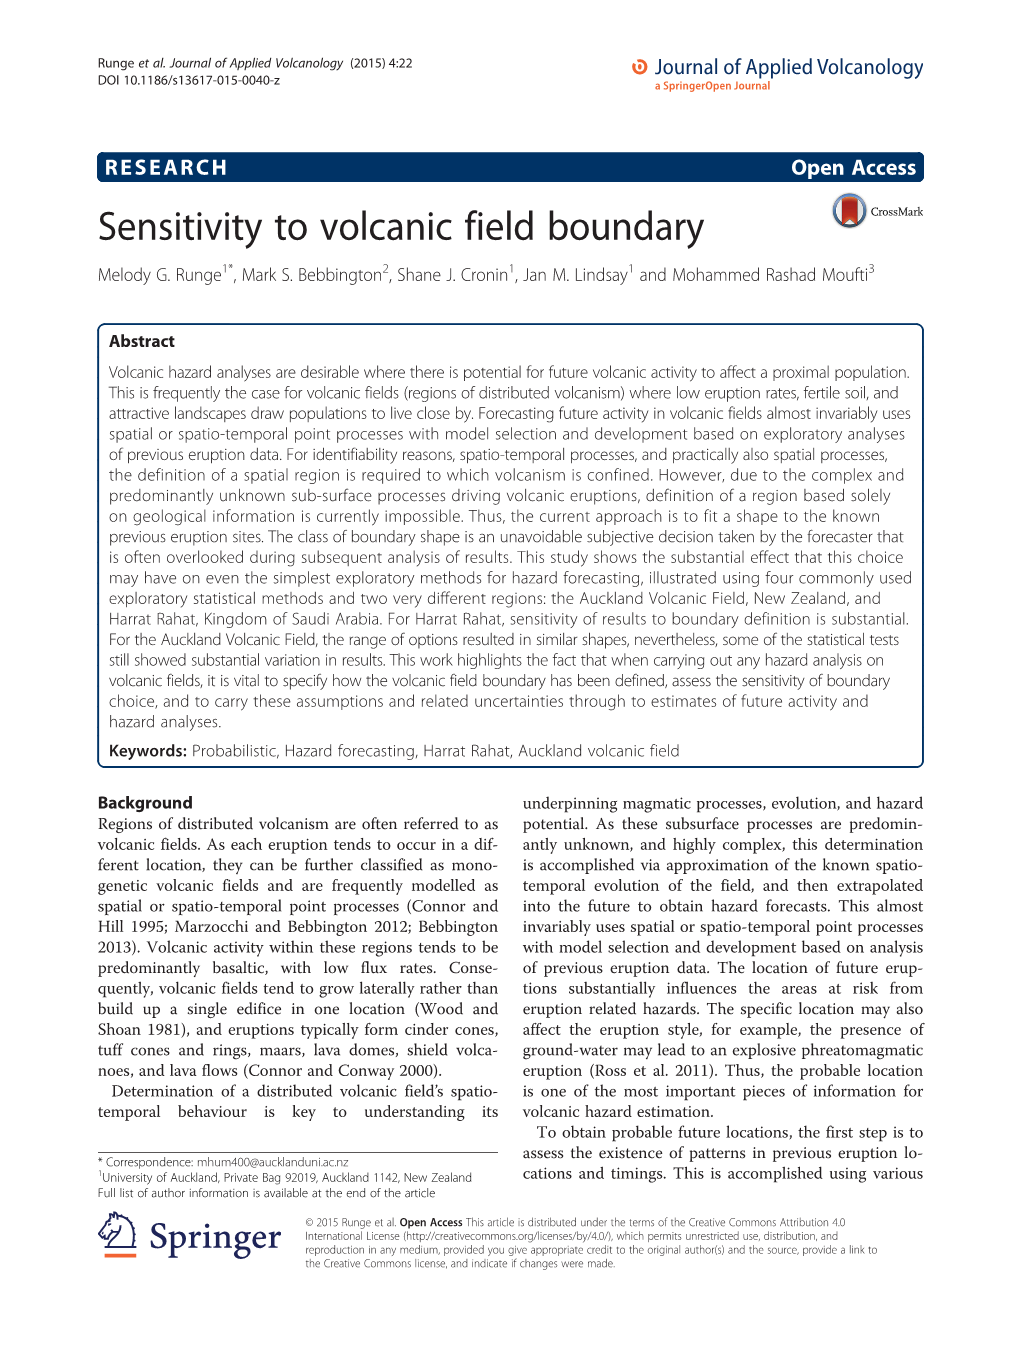 Sensitivity to Volcanic Field Boundary Melody G